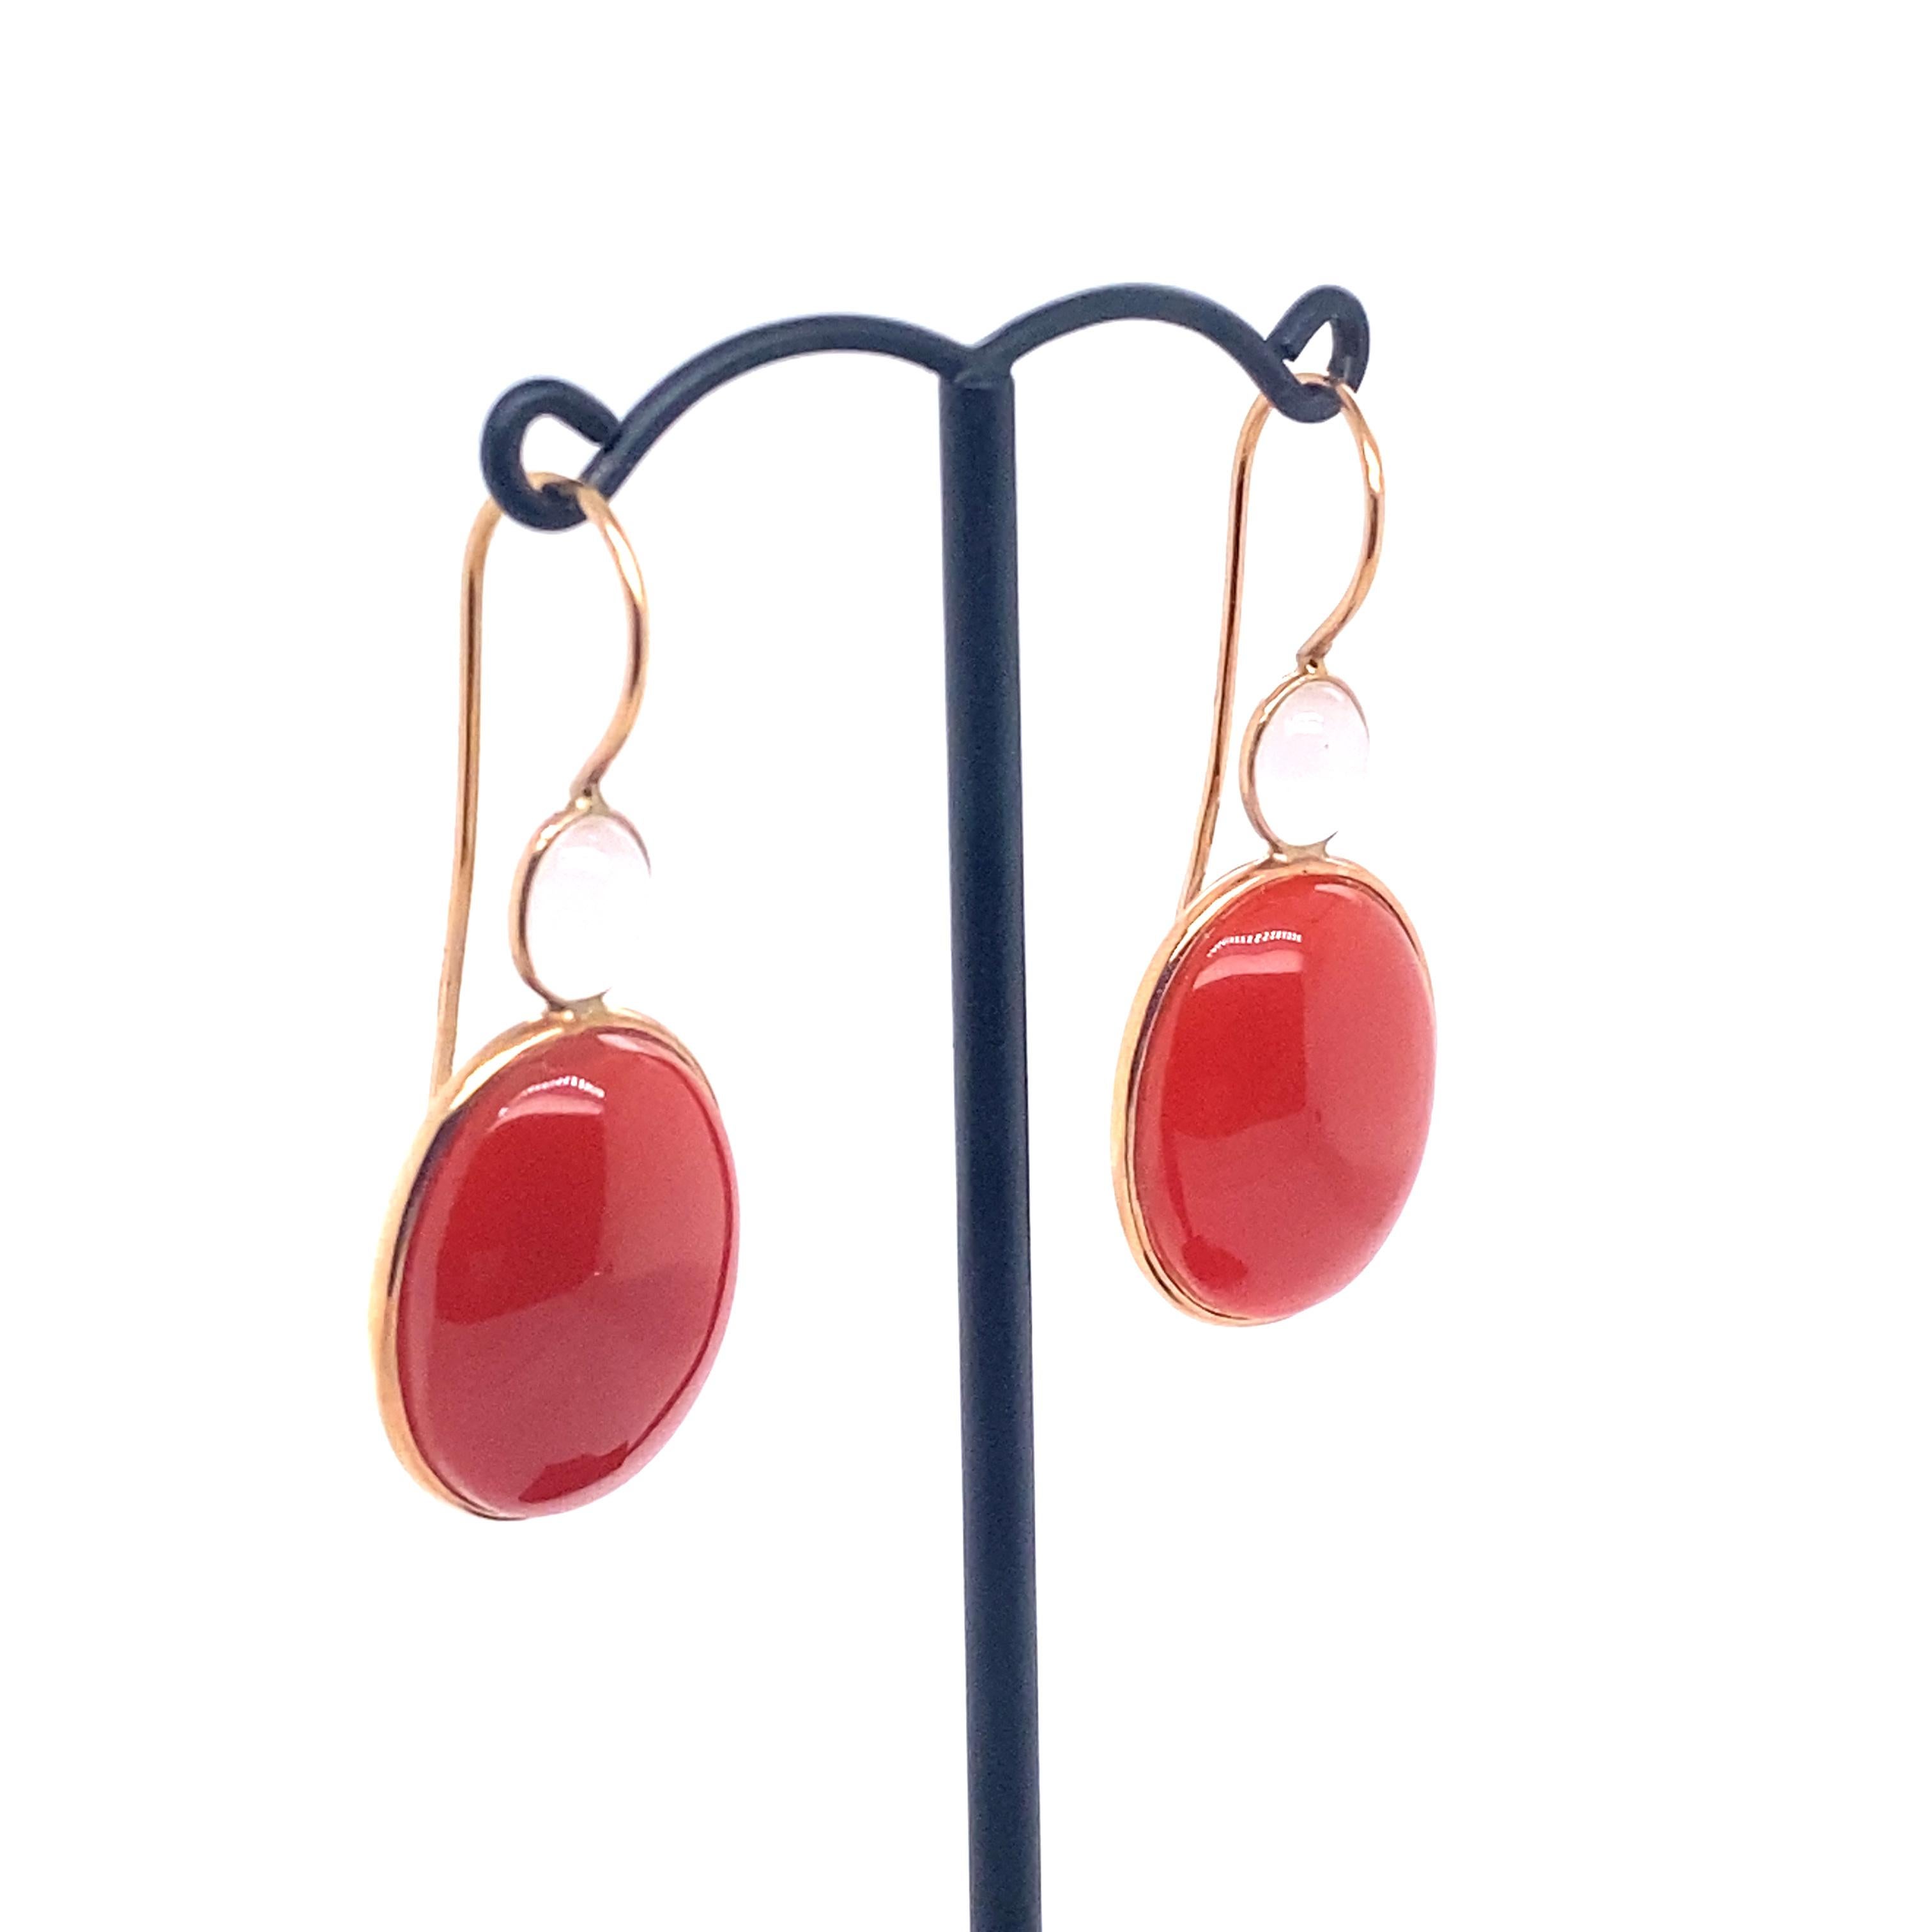 18 Karat Rotgold Rot Agatha Chandelier Ohrringe mit grauem Quarz.

Französische Kronleuchter-Ohrringe. Die Steine sind in Form eines Cabochons geschliffen und reflektieren das Licht. Das Ganze ist sehr leicht. 
Die Steine sind auf der Rückseite mit